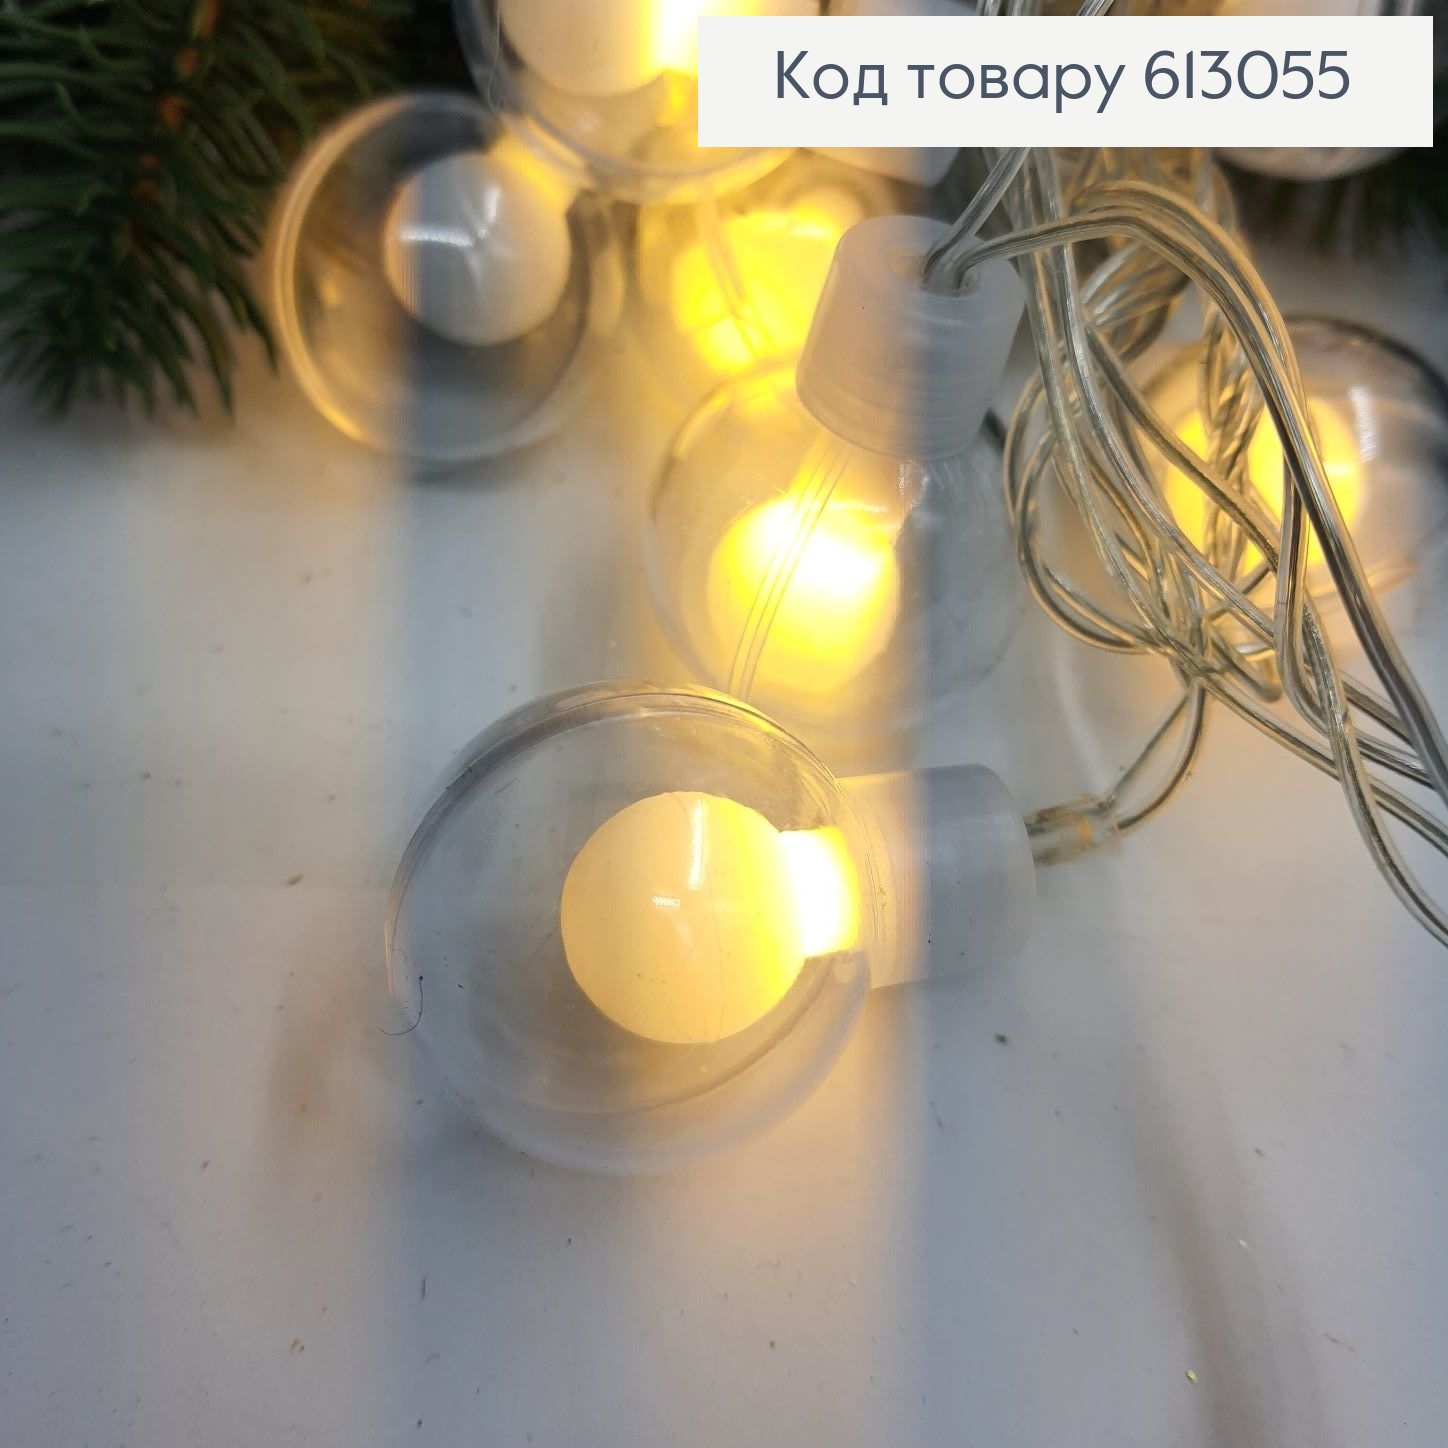 Гирлянда Шар в шаре 30 мм 5 м 20 LED белая терлая, (мигающая) 613055 фото 3